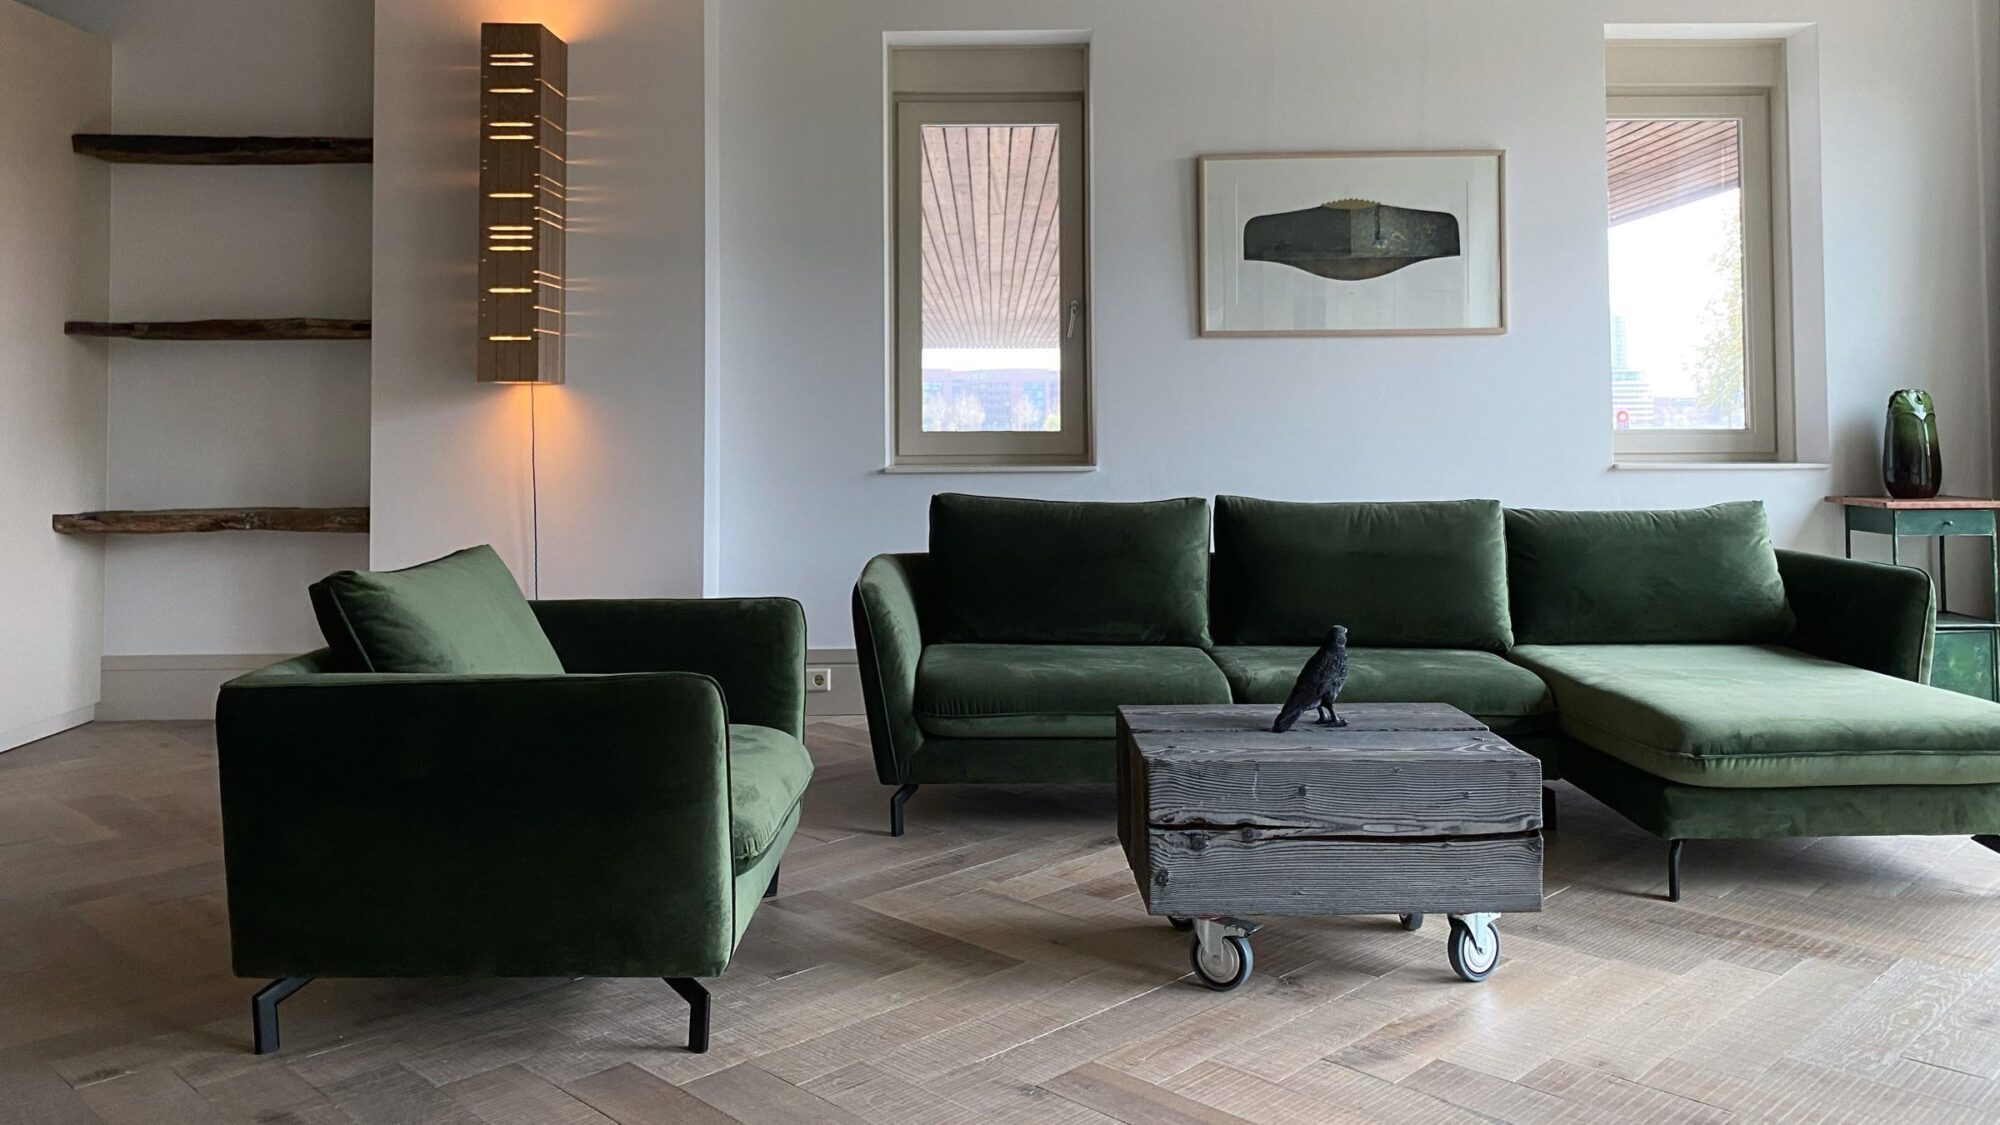 Tate bute herringbone floor with green sofa 3a 2021 05 04 133310